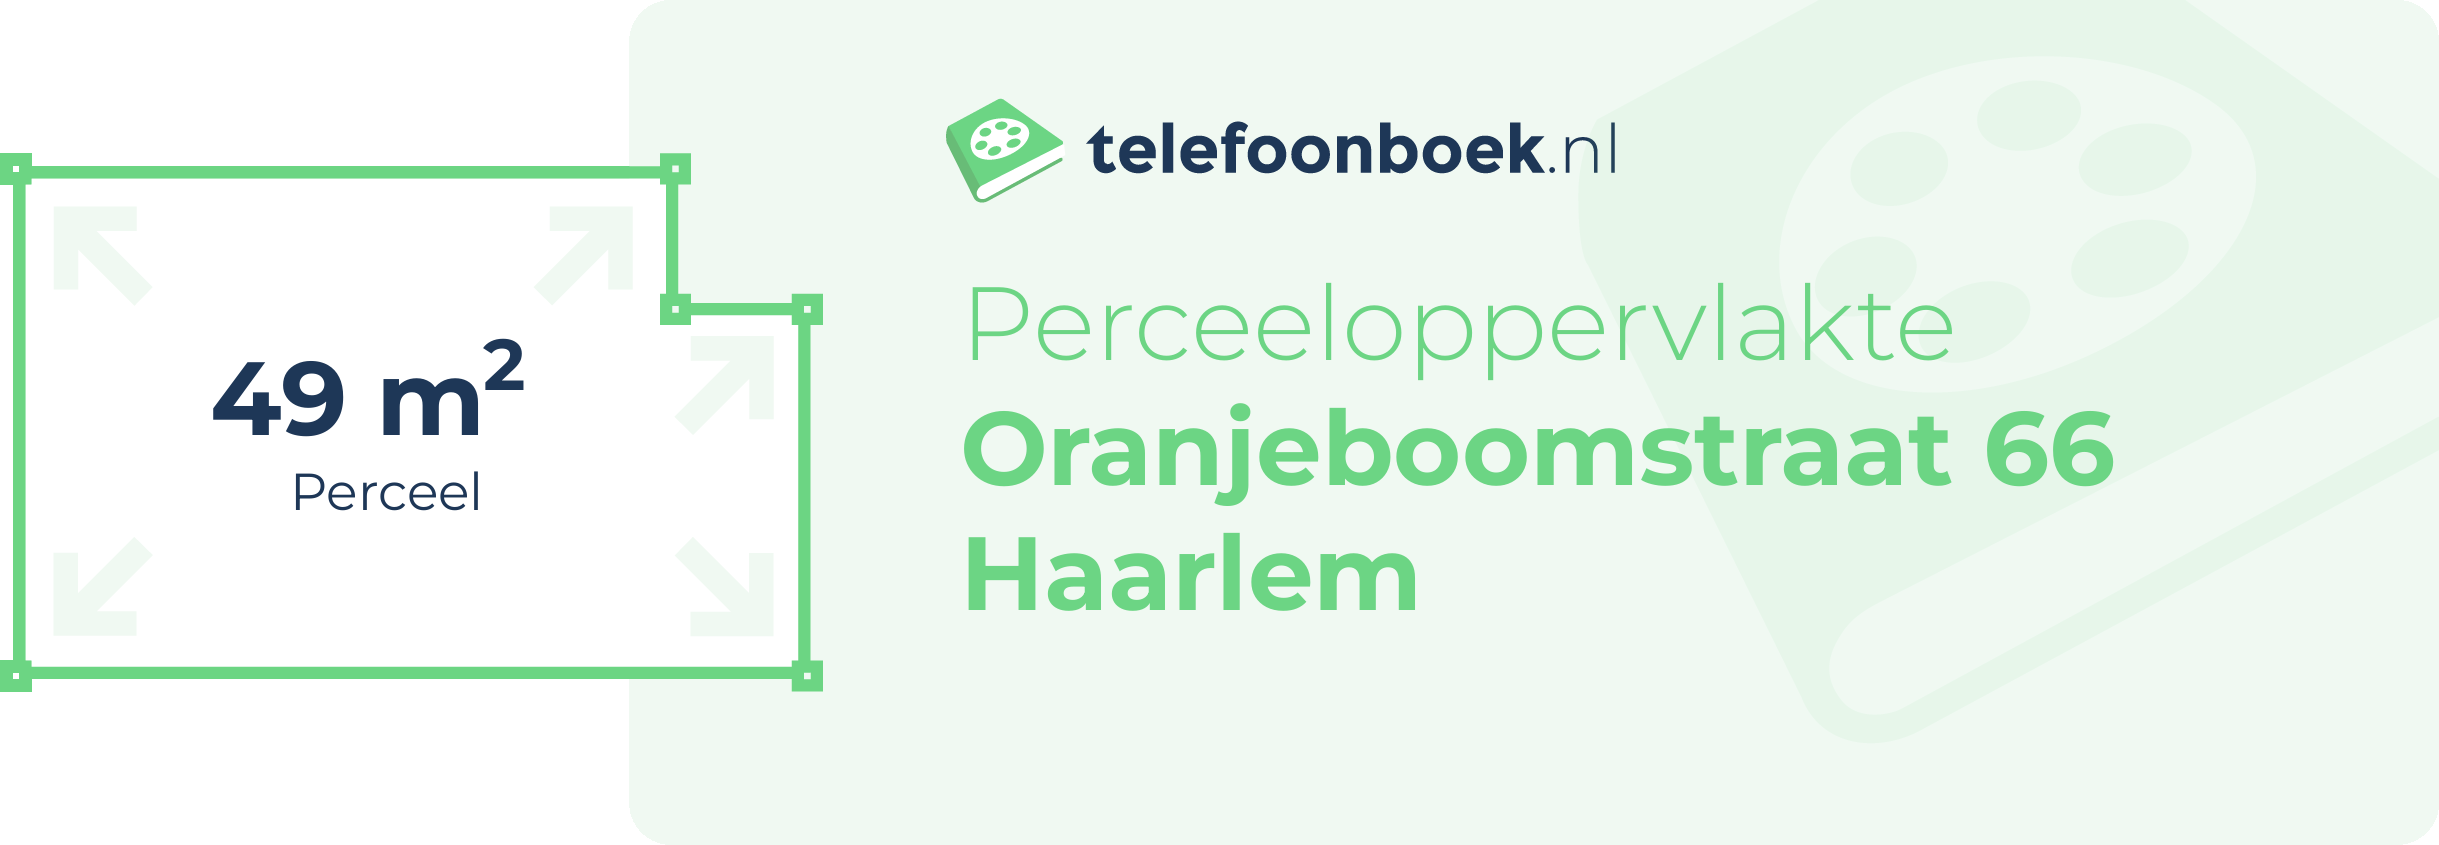 Perceeloppervlakte Oranjeboomstraat 66 Haarlem